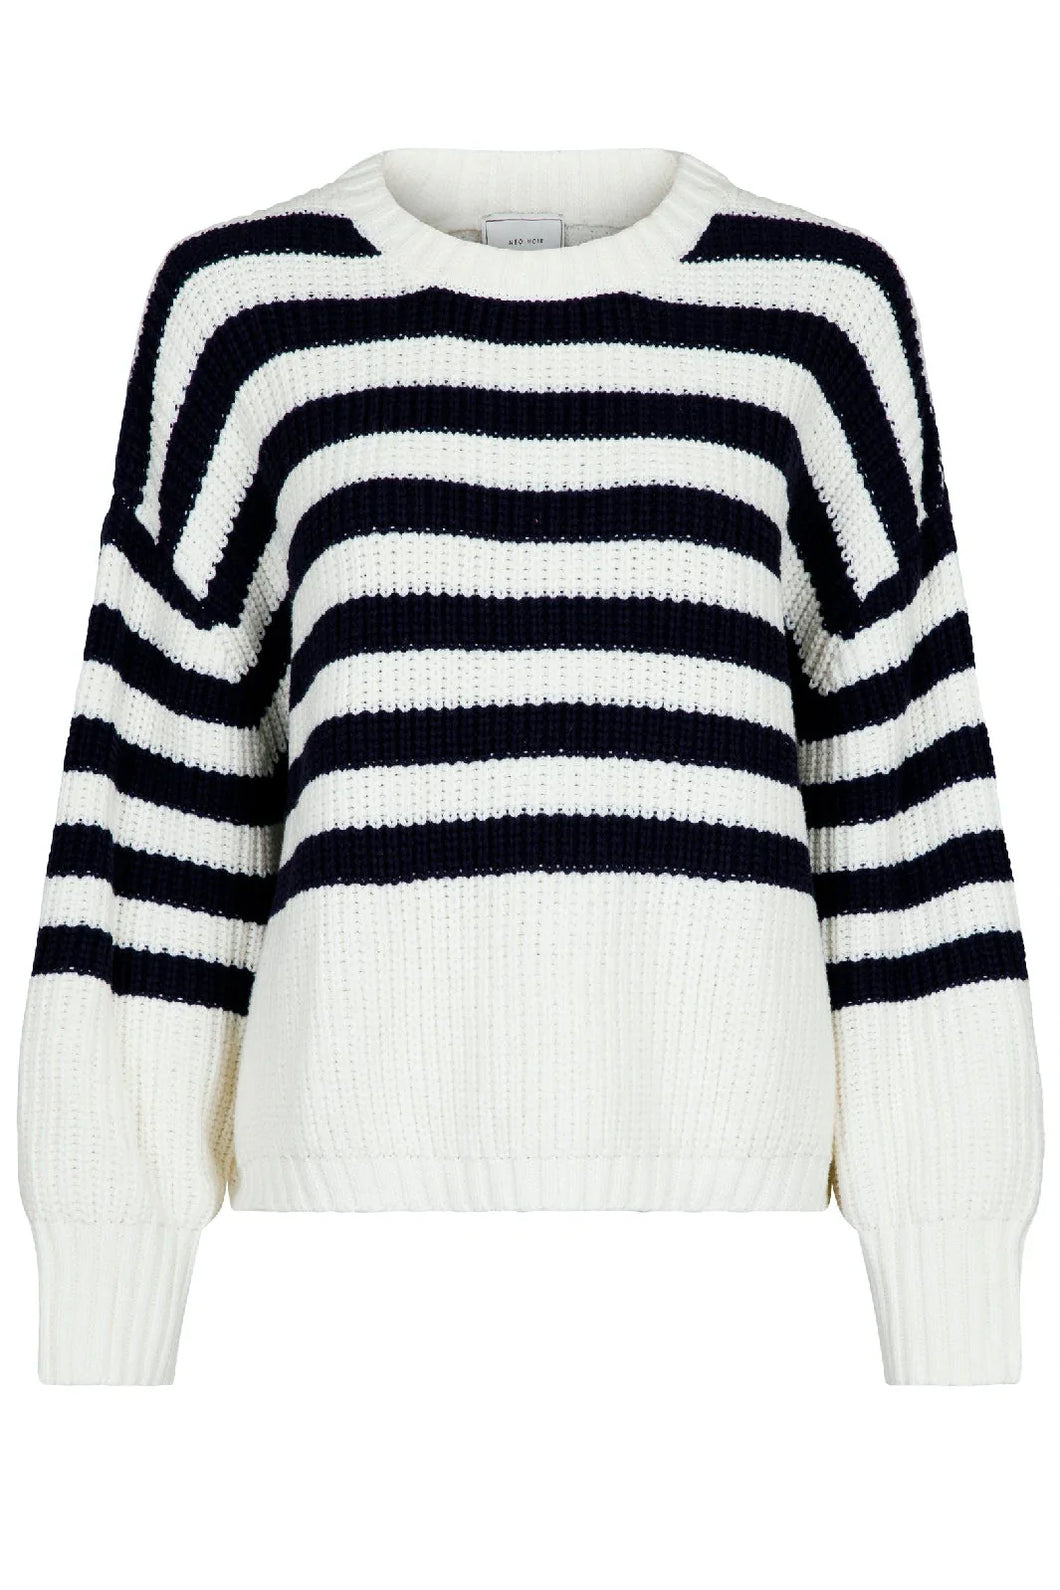 Dakota stripe knit blouse